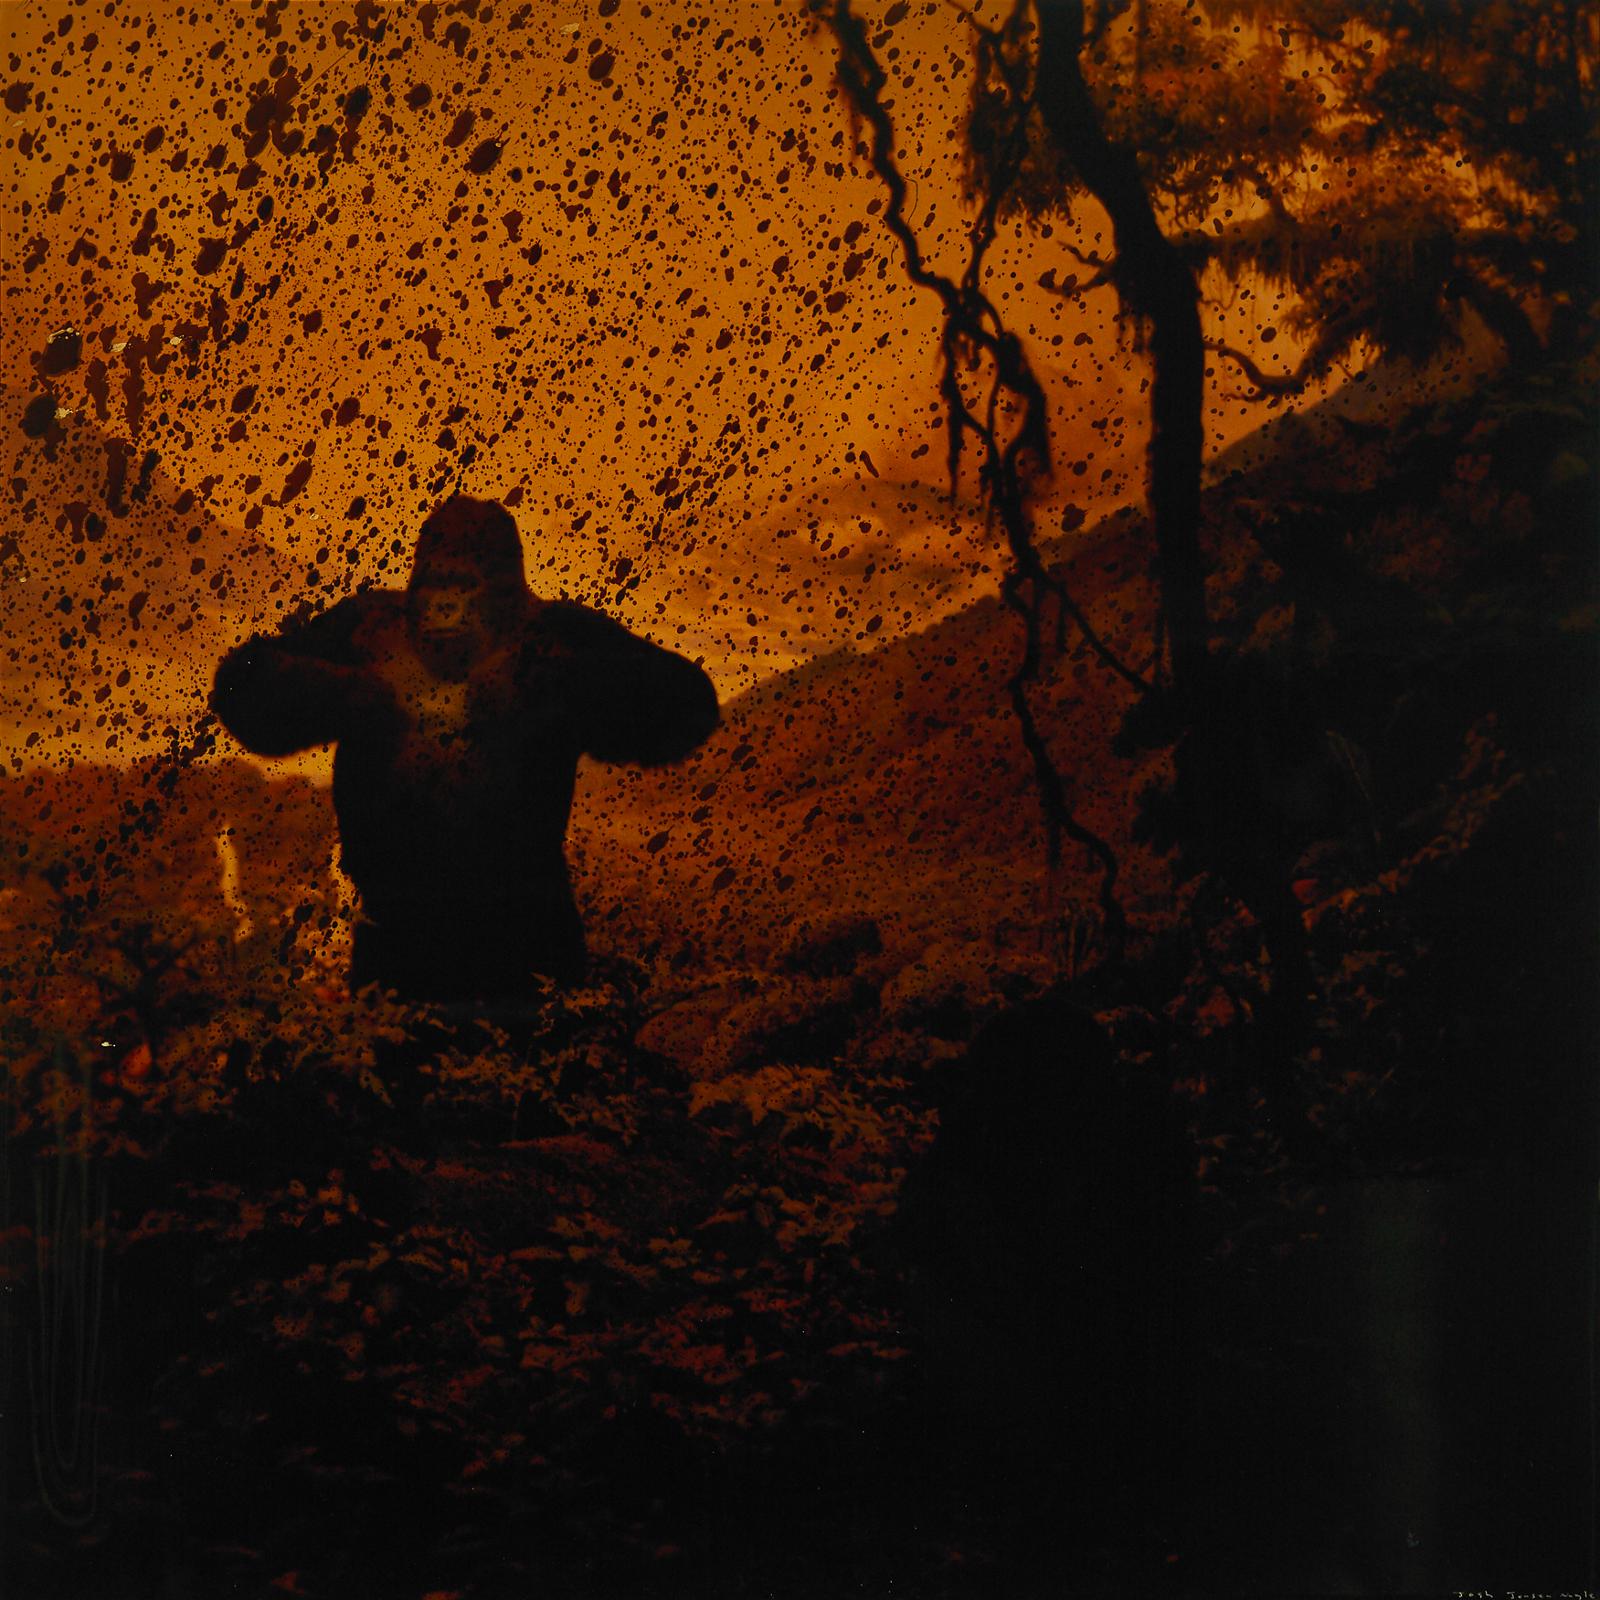 Joshua Jensen-Nagle (1981) - The Gorilla